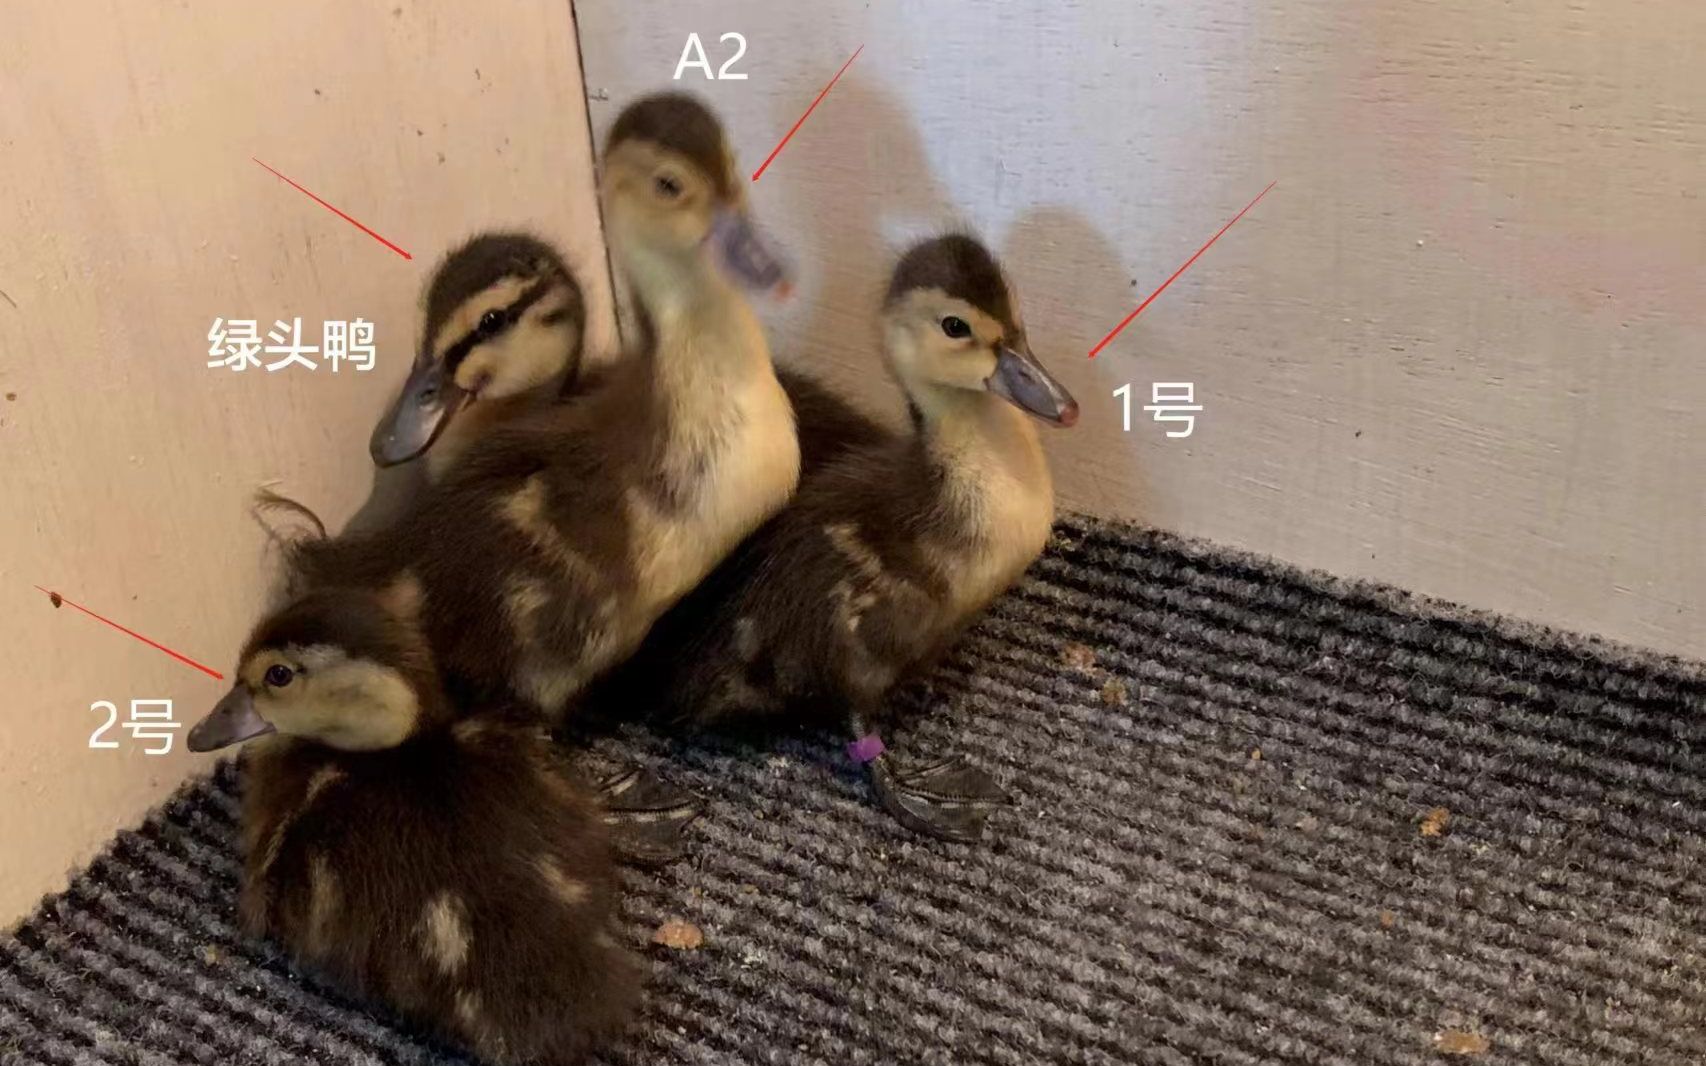 工作人员在巢穴中放置了一只小绿头鸭作为“陪伴动物”。北京动物园供图